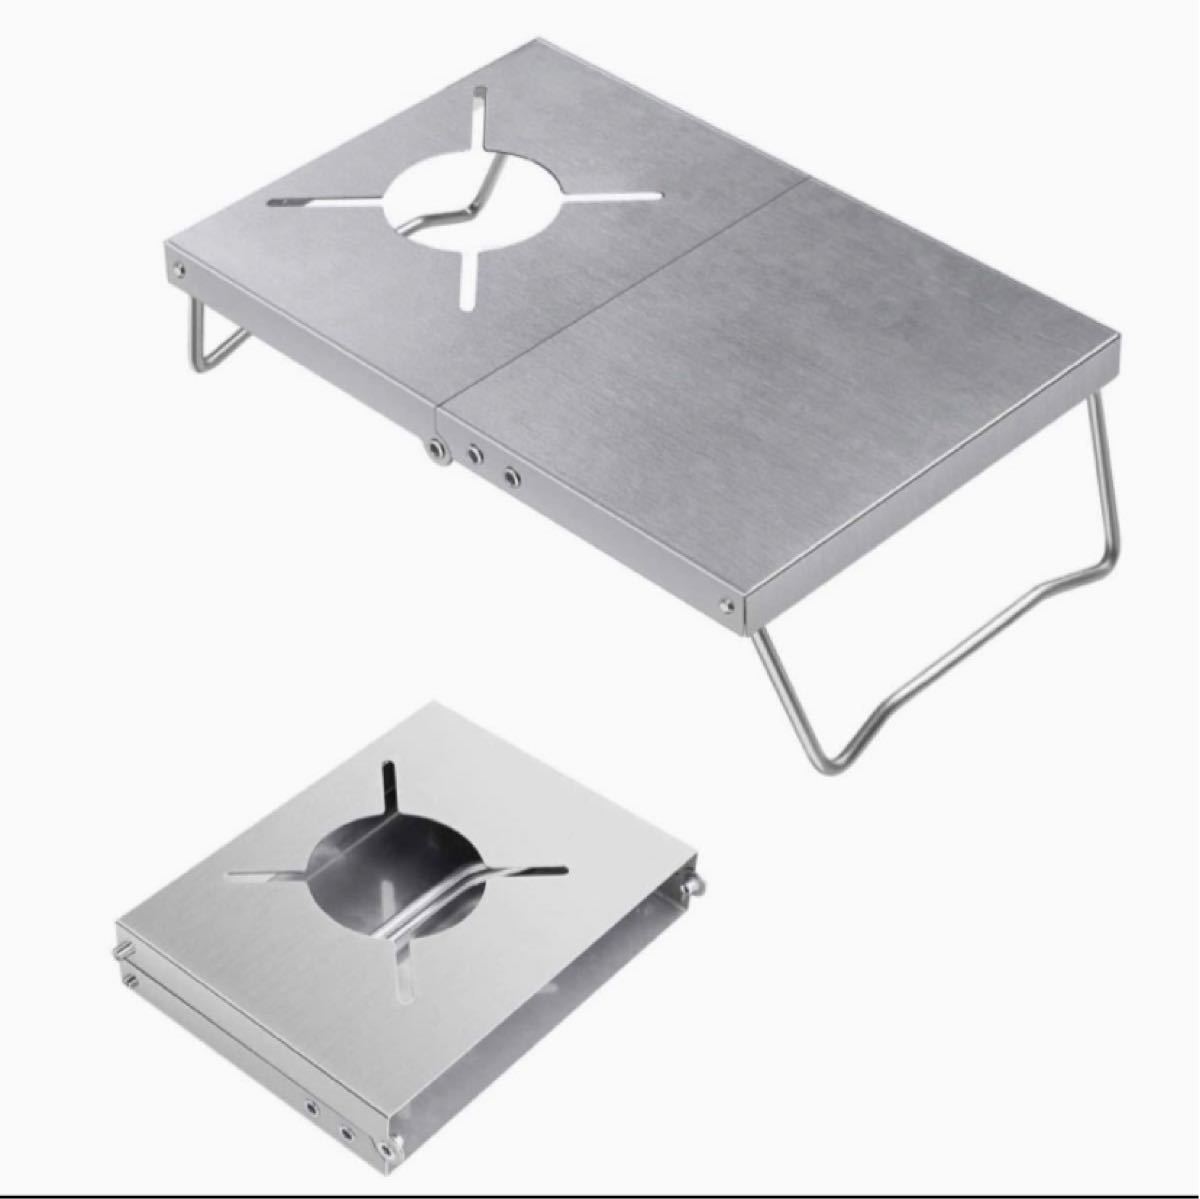 「2021改善新モデル」遮熱テーブル シングルバーナー用 テーブル 超軽量